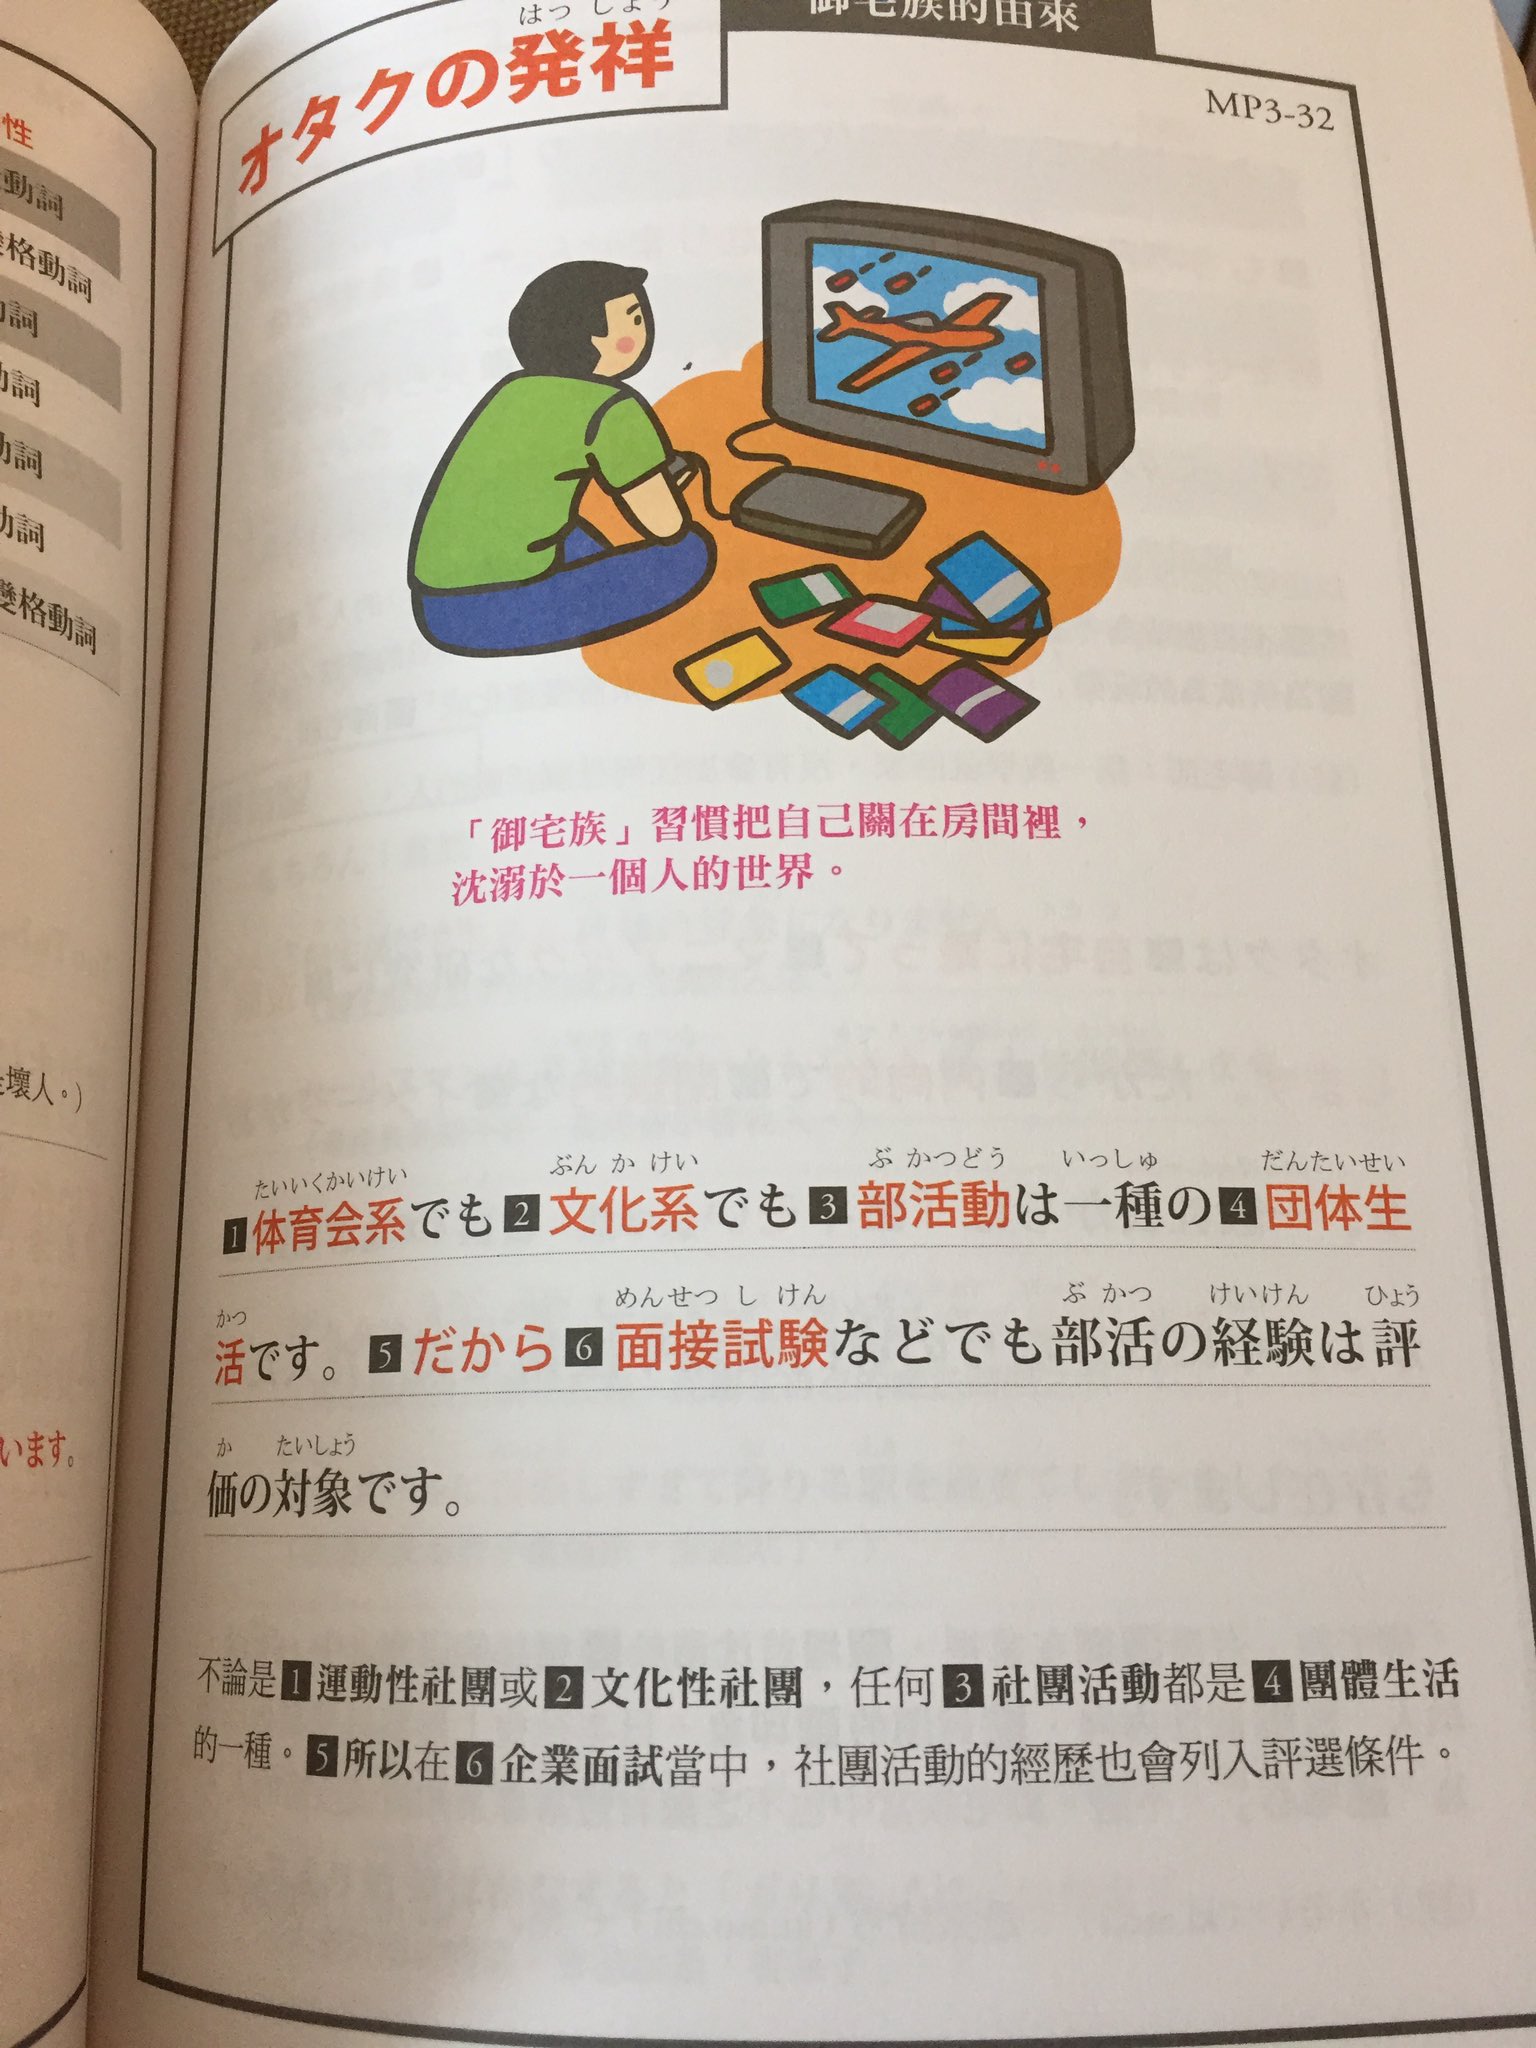 まや 台北で買った日本語の教科書が度直球にオタクの心を破壊していく文章で辛い T Co Cqowykhhet Twitter